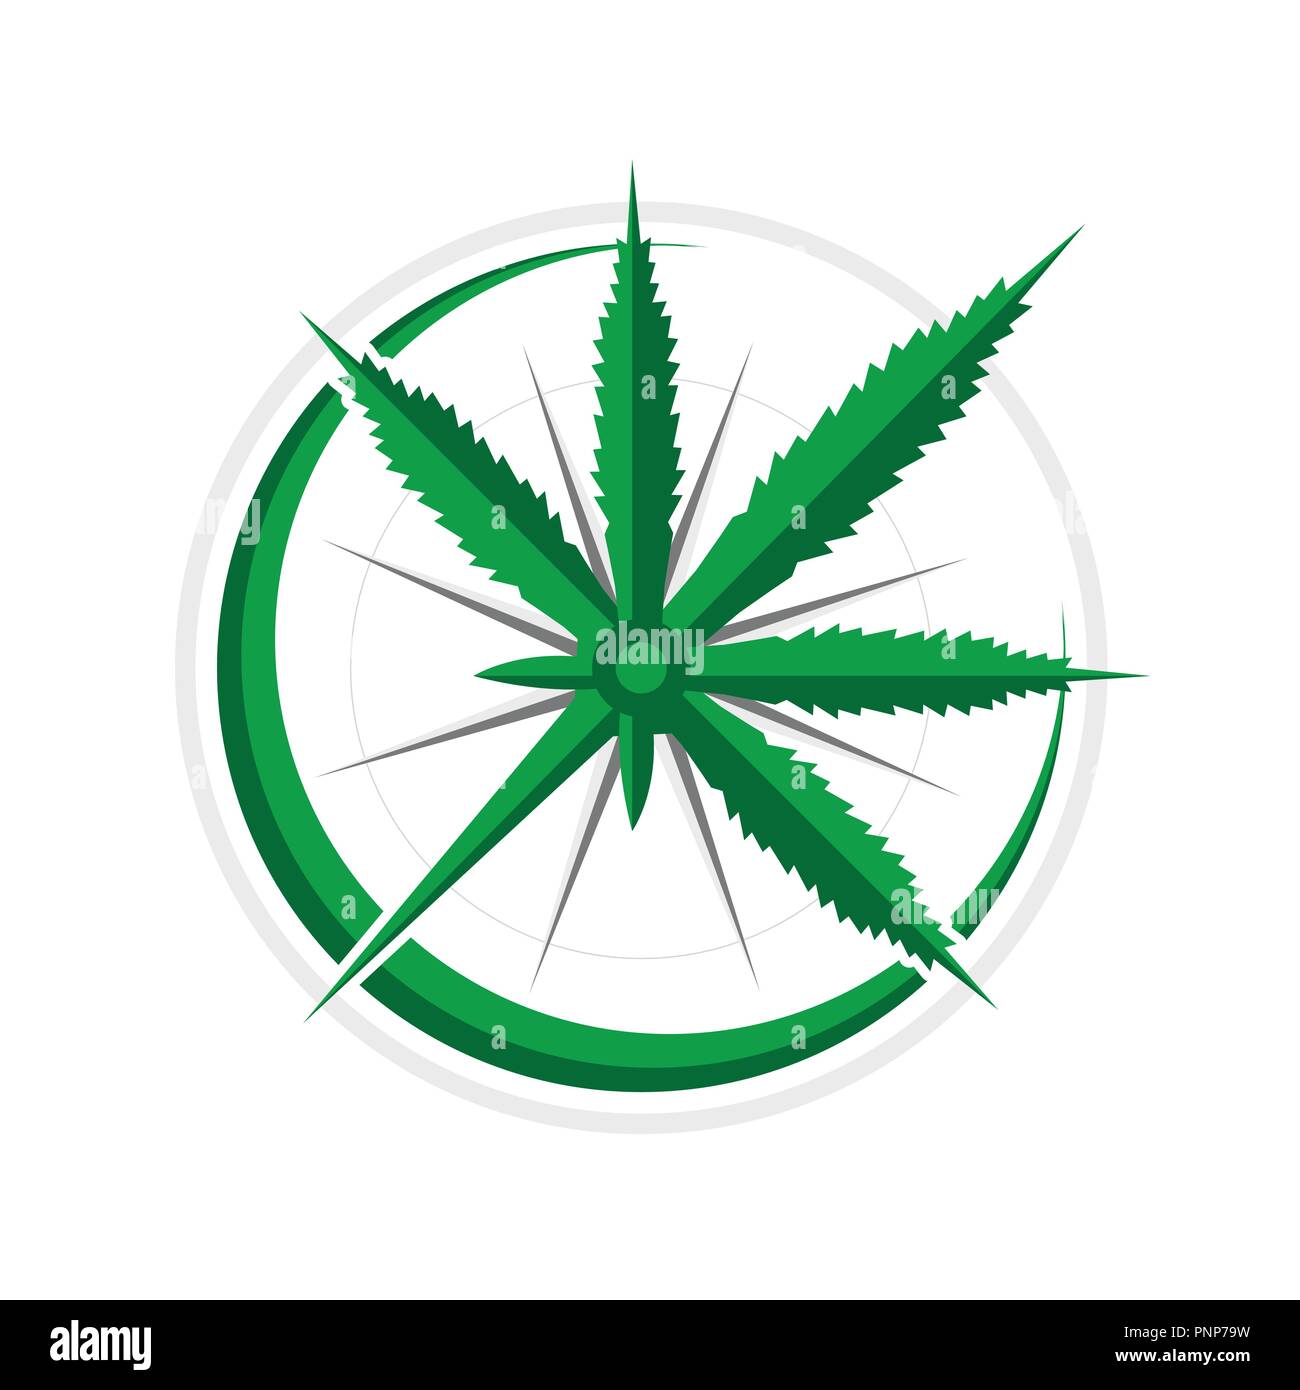 La Cannabis bussola 3D avventura di navigazione simbolo vettore Logo grafico del modello di progettazione Illustrazione Vettoriale